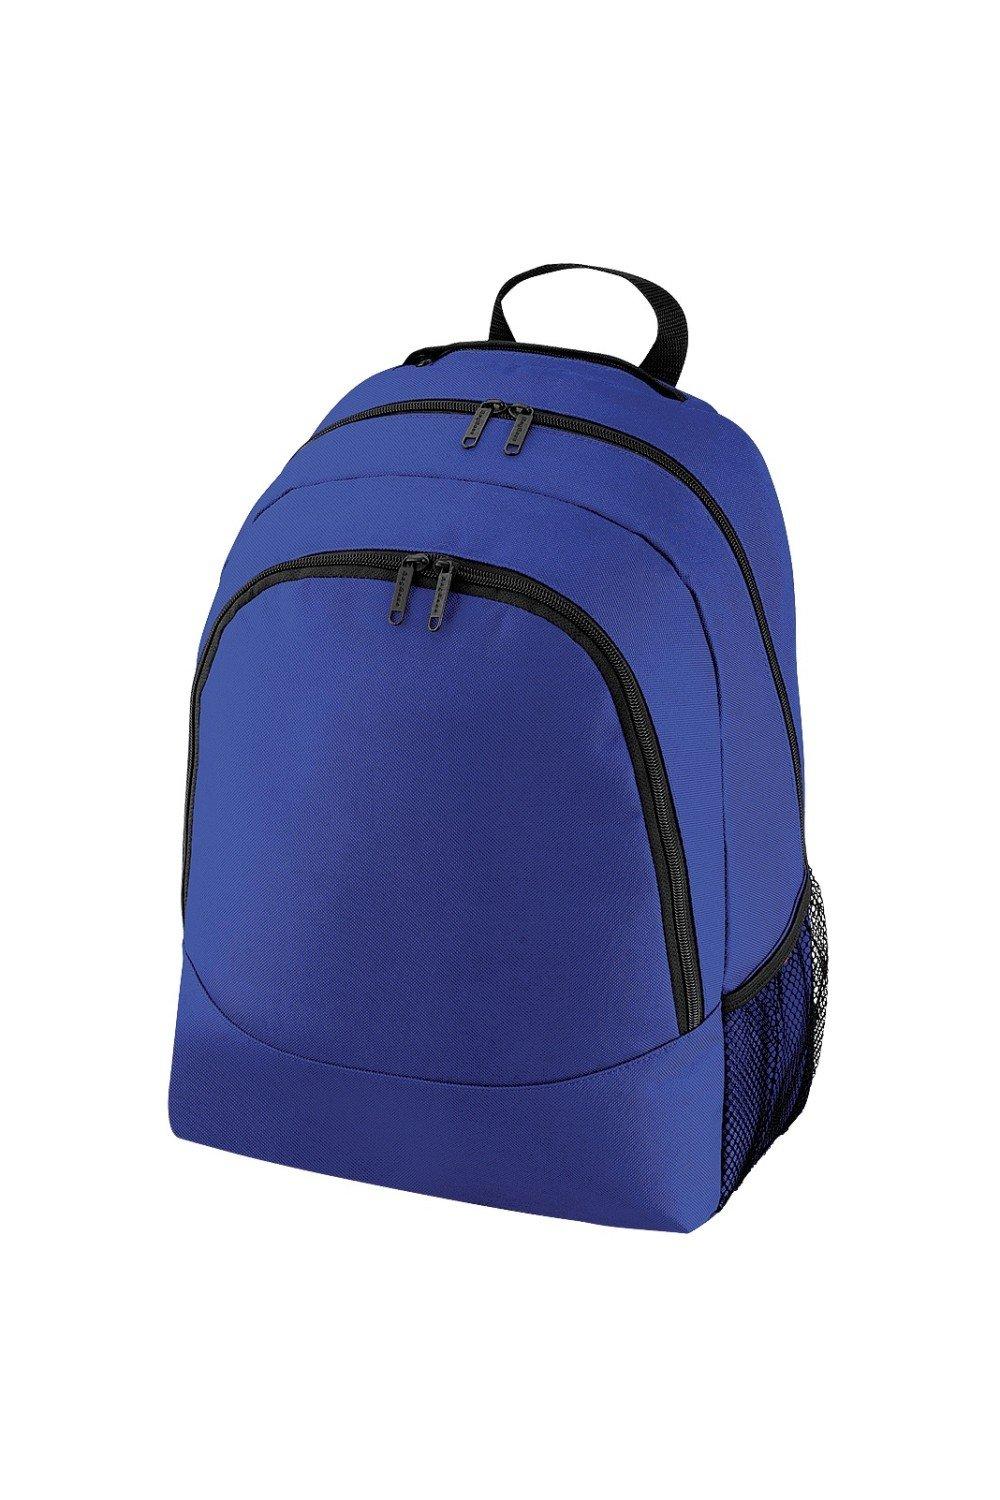 Обычный универсальный рюкзак/сумка-рюкзак (18 литров) Bagbase, синий чехол задняя панель накладка бампер mypads mp3 для huawei honor 6 plus pe ul00 tl20 tl10 cl00 75 7 противоударный